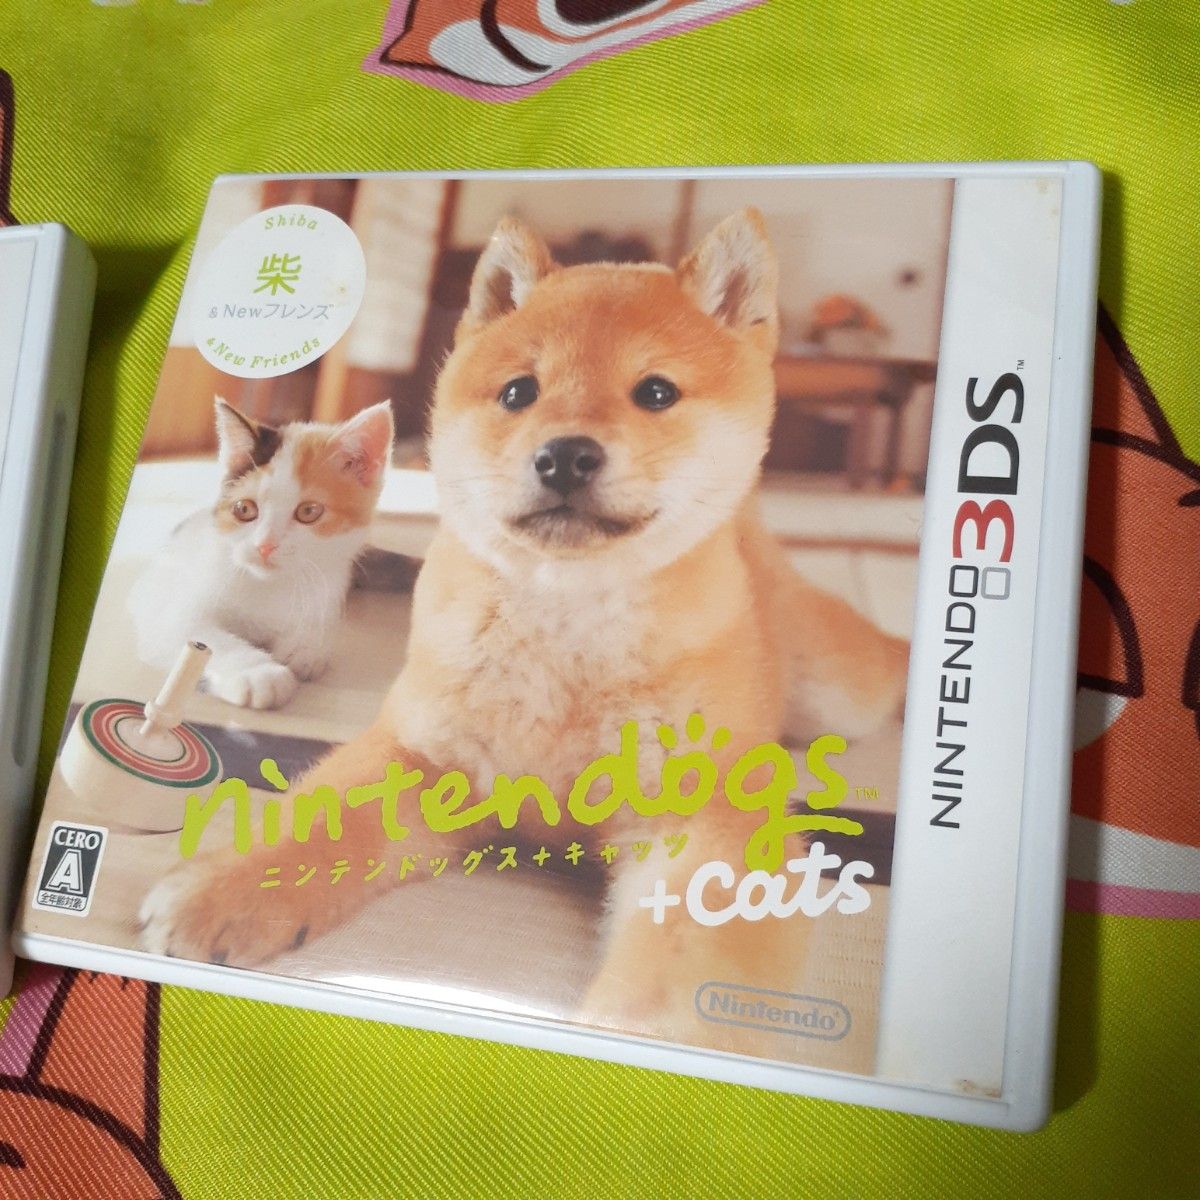 3DS nintendogs+cats ニンテンドッグス Newフレンズ 柴 トイ プードル